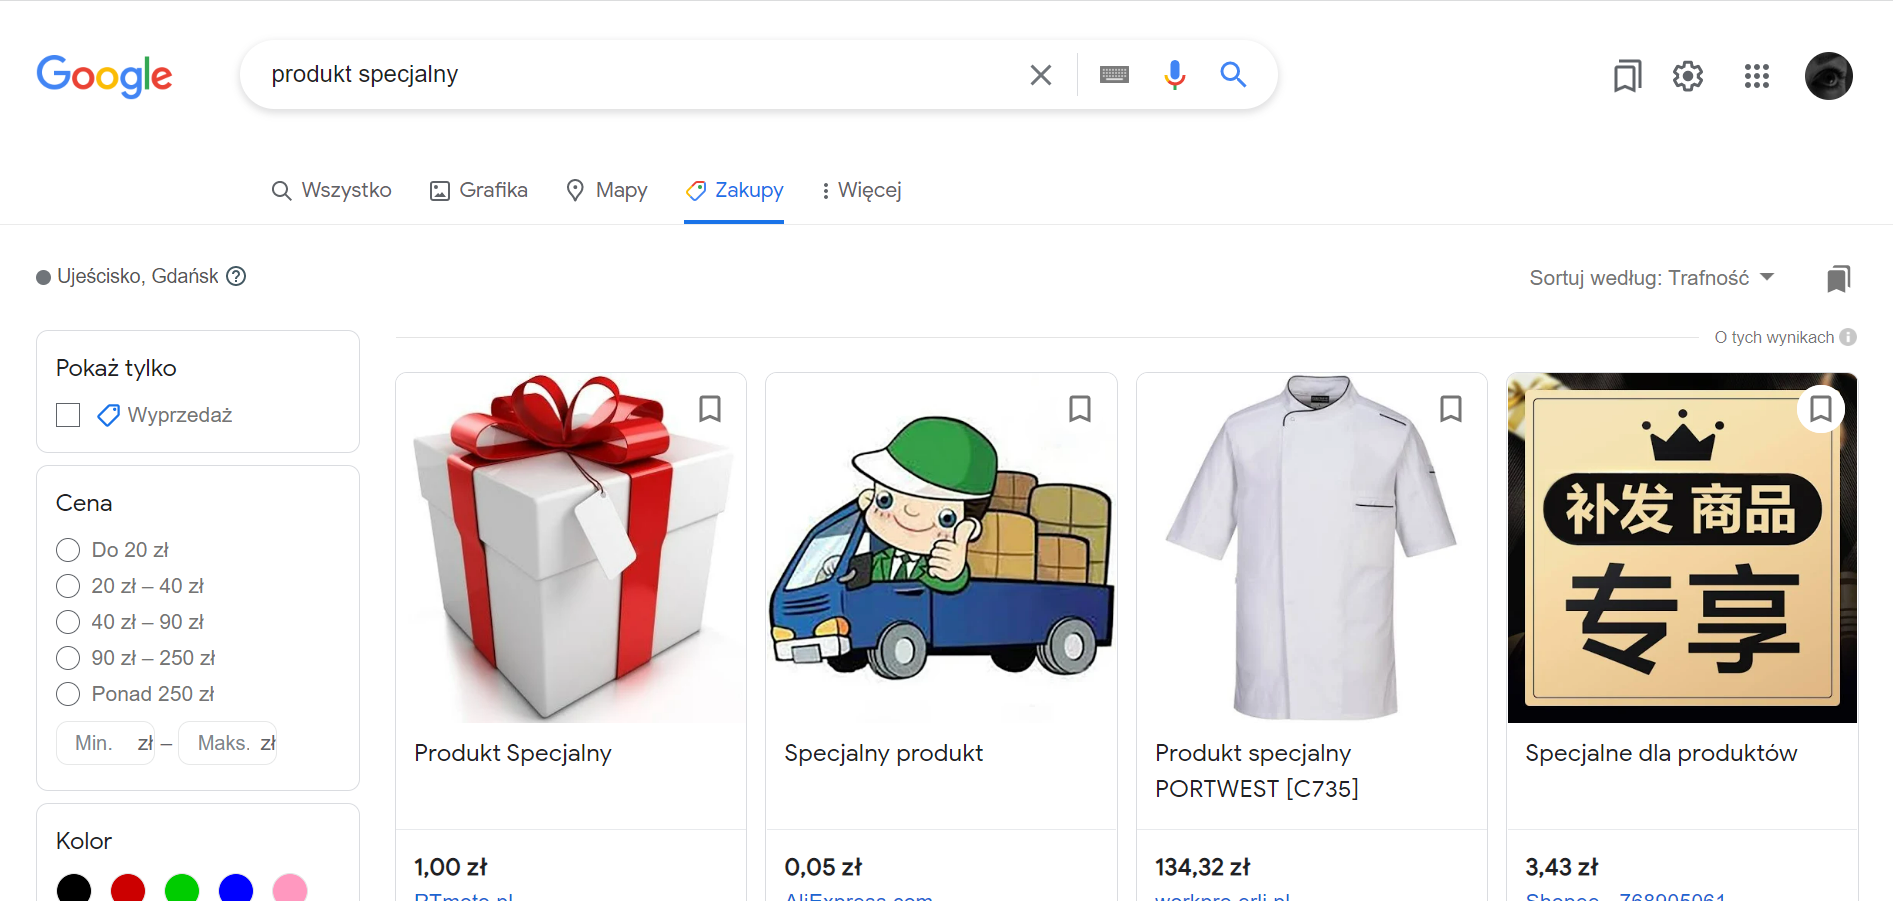 Google Shopping – aplikacja Shoper umożliwia dotarcie do odbiorców również za pomocą narzędzia Google. [Źródło: https://shopping.google.com]